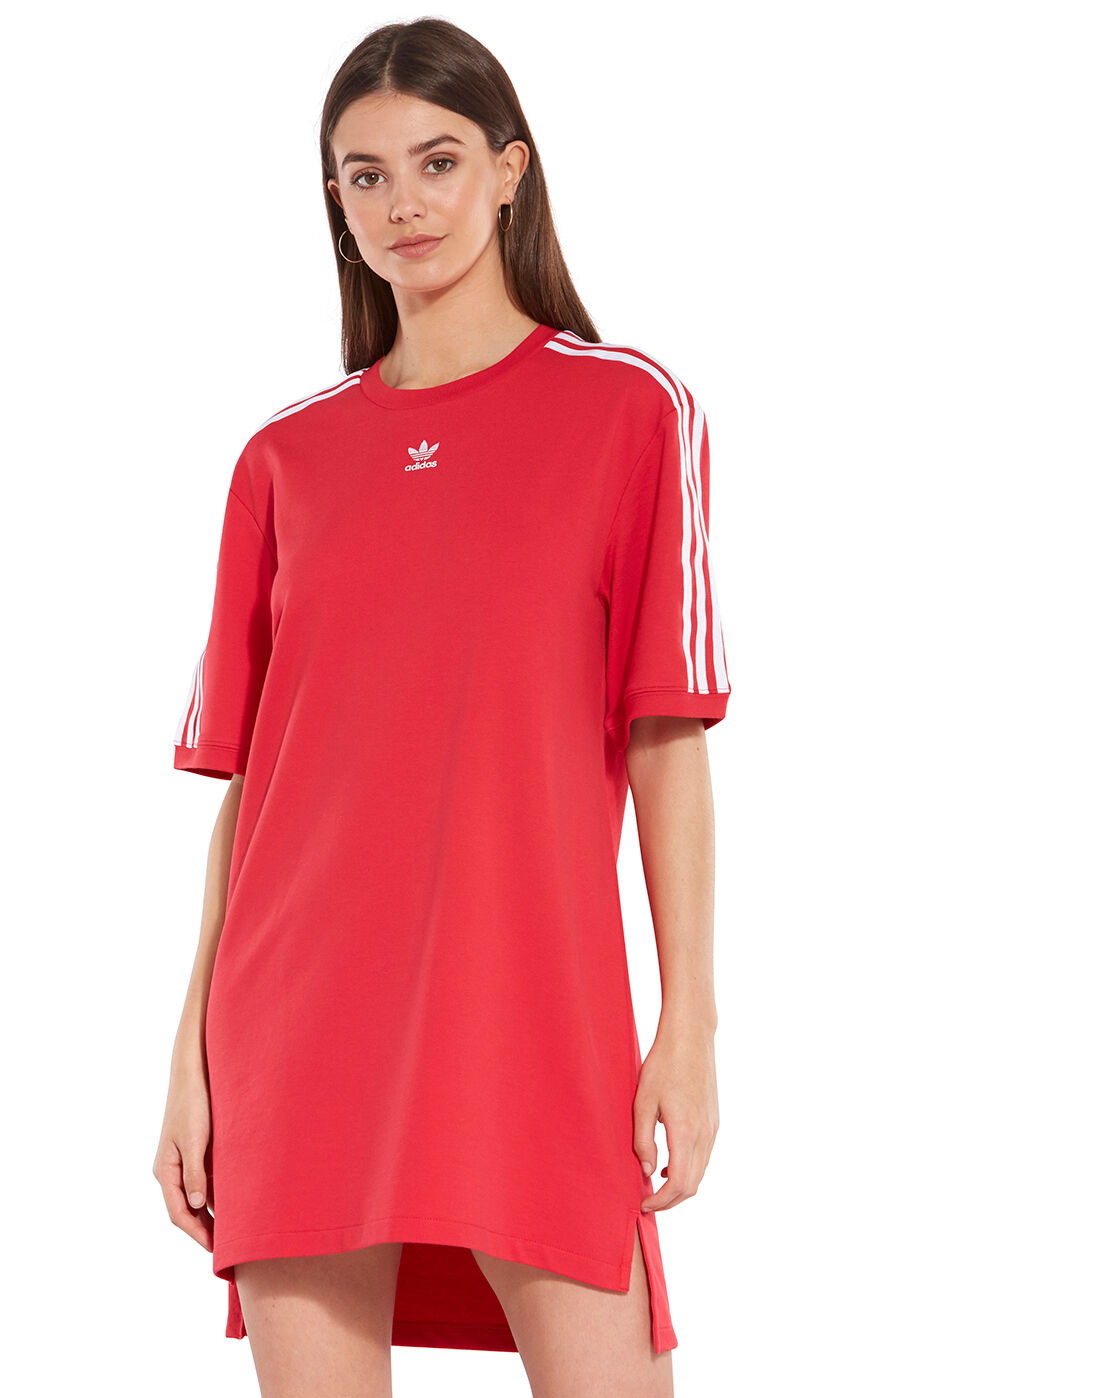 red adidas t shirt dress